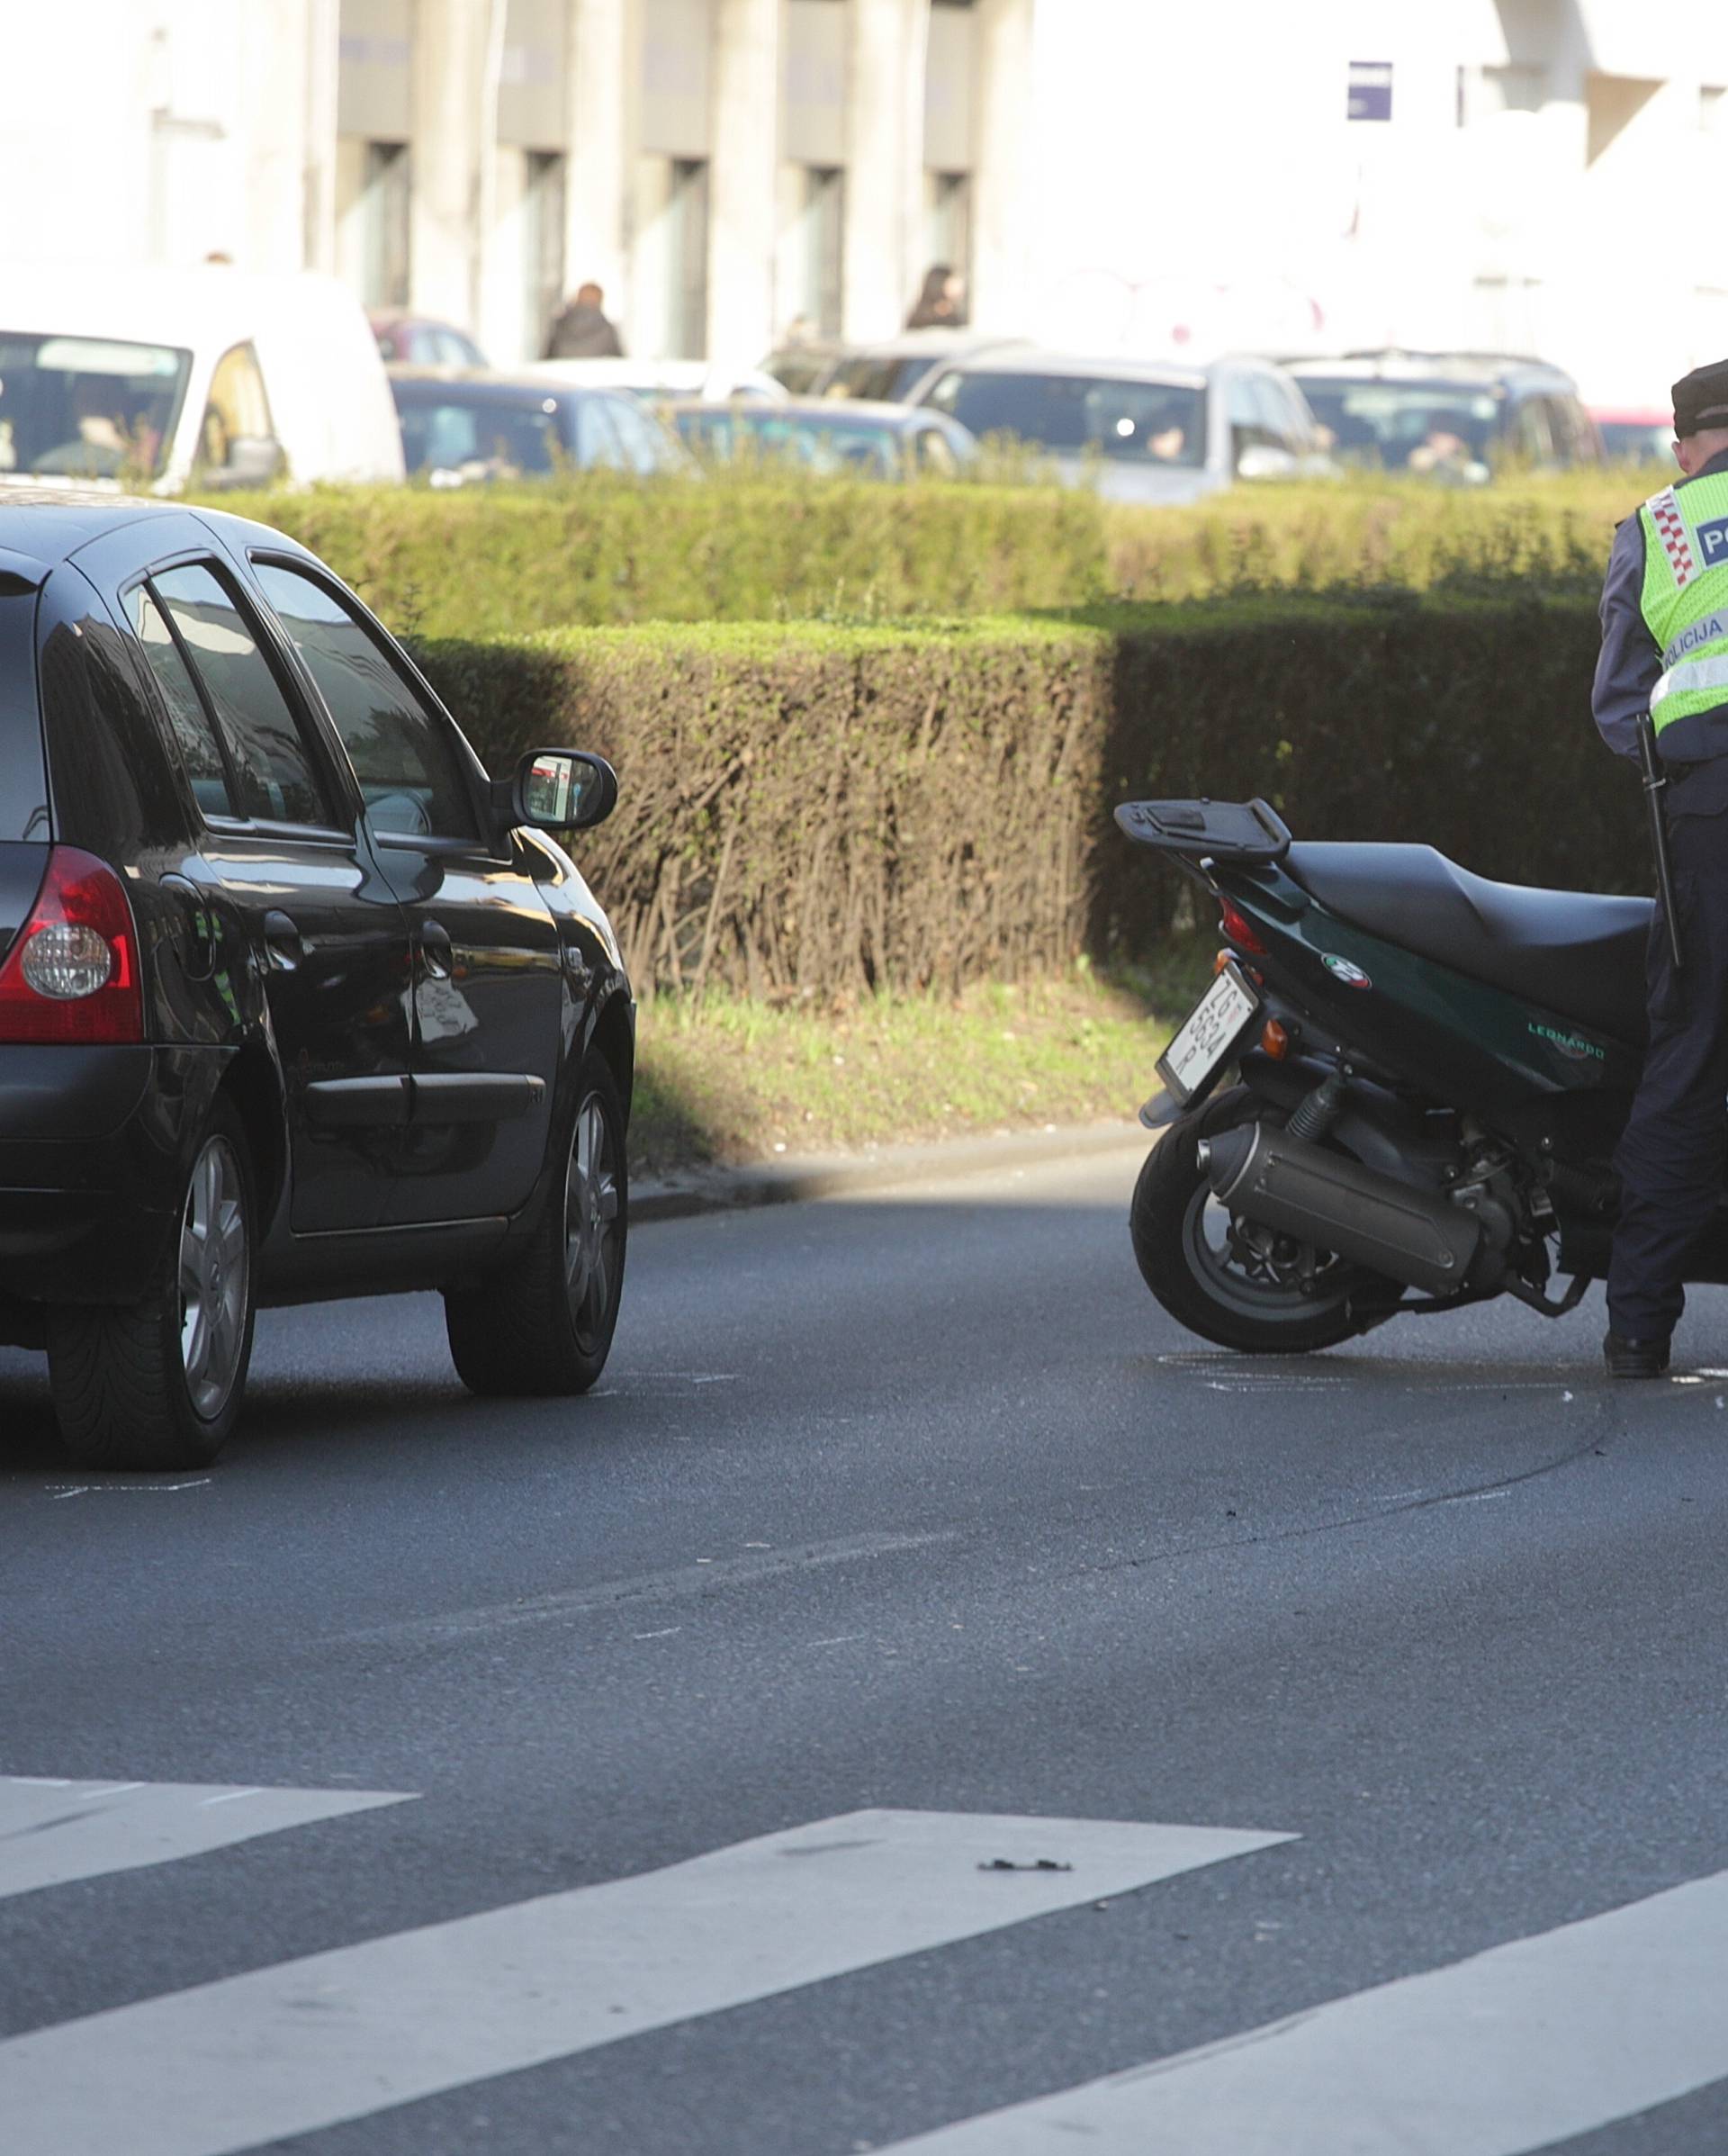 Sudarili su se auto i skuter u Zagrebu, jedan čovjek ozlijeđen